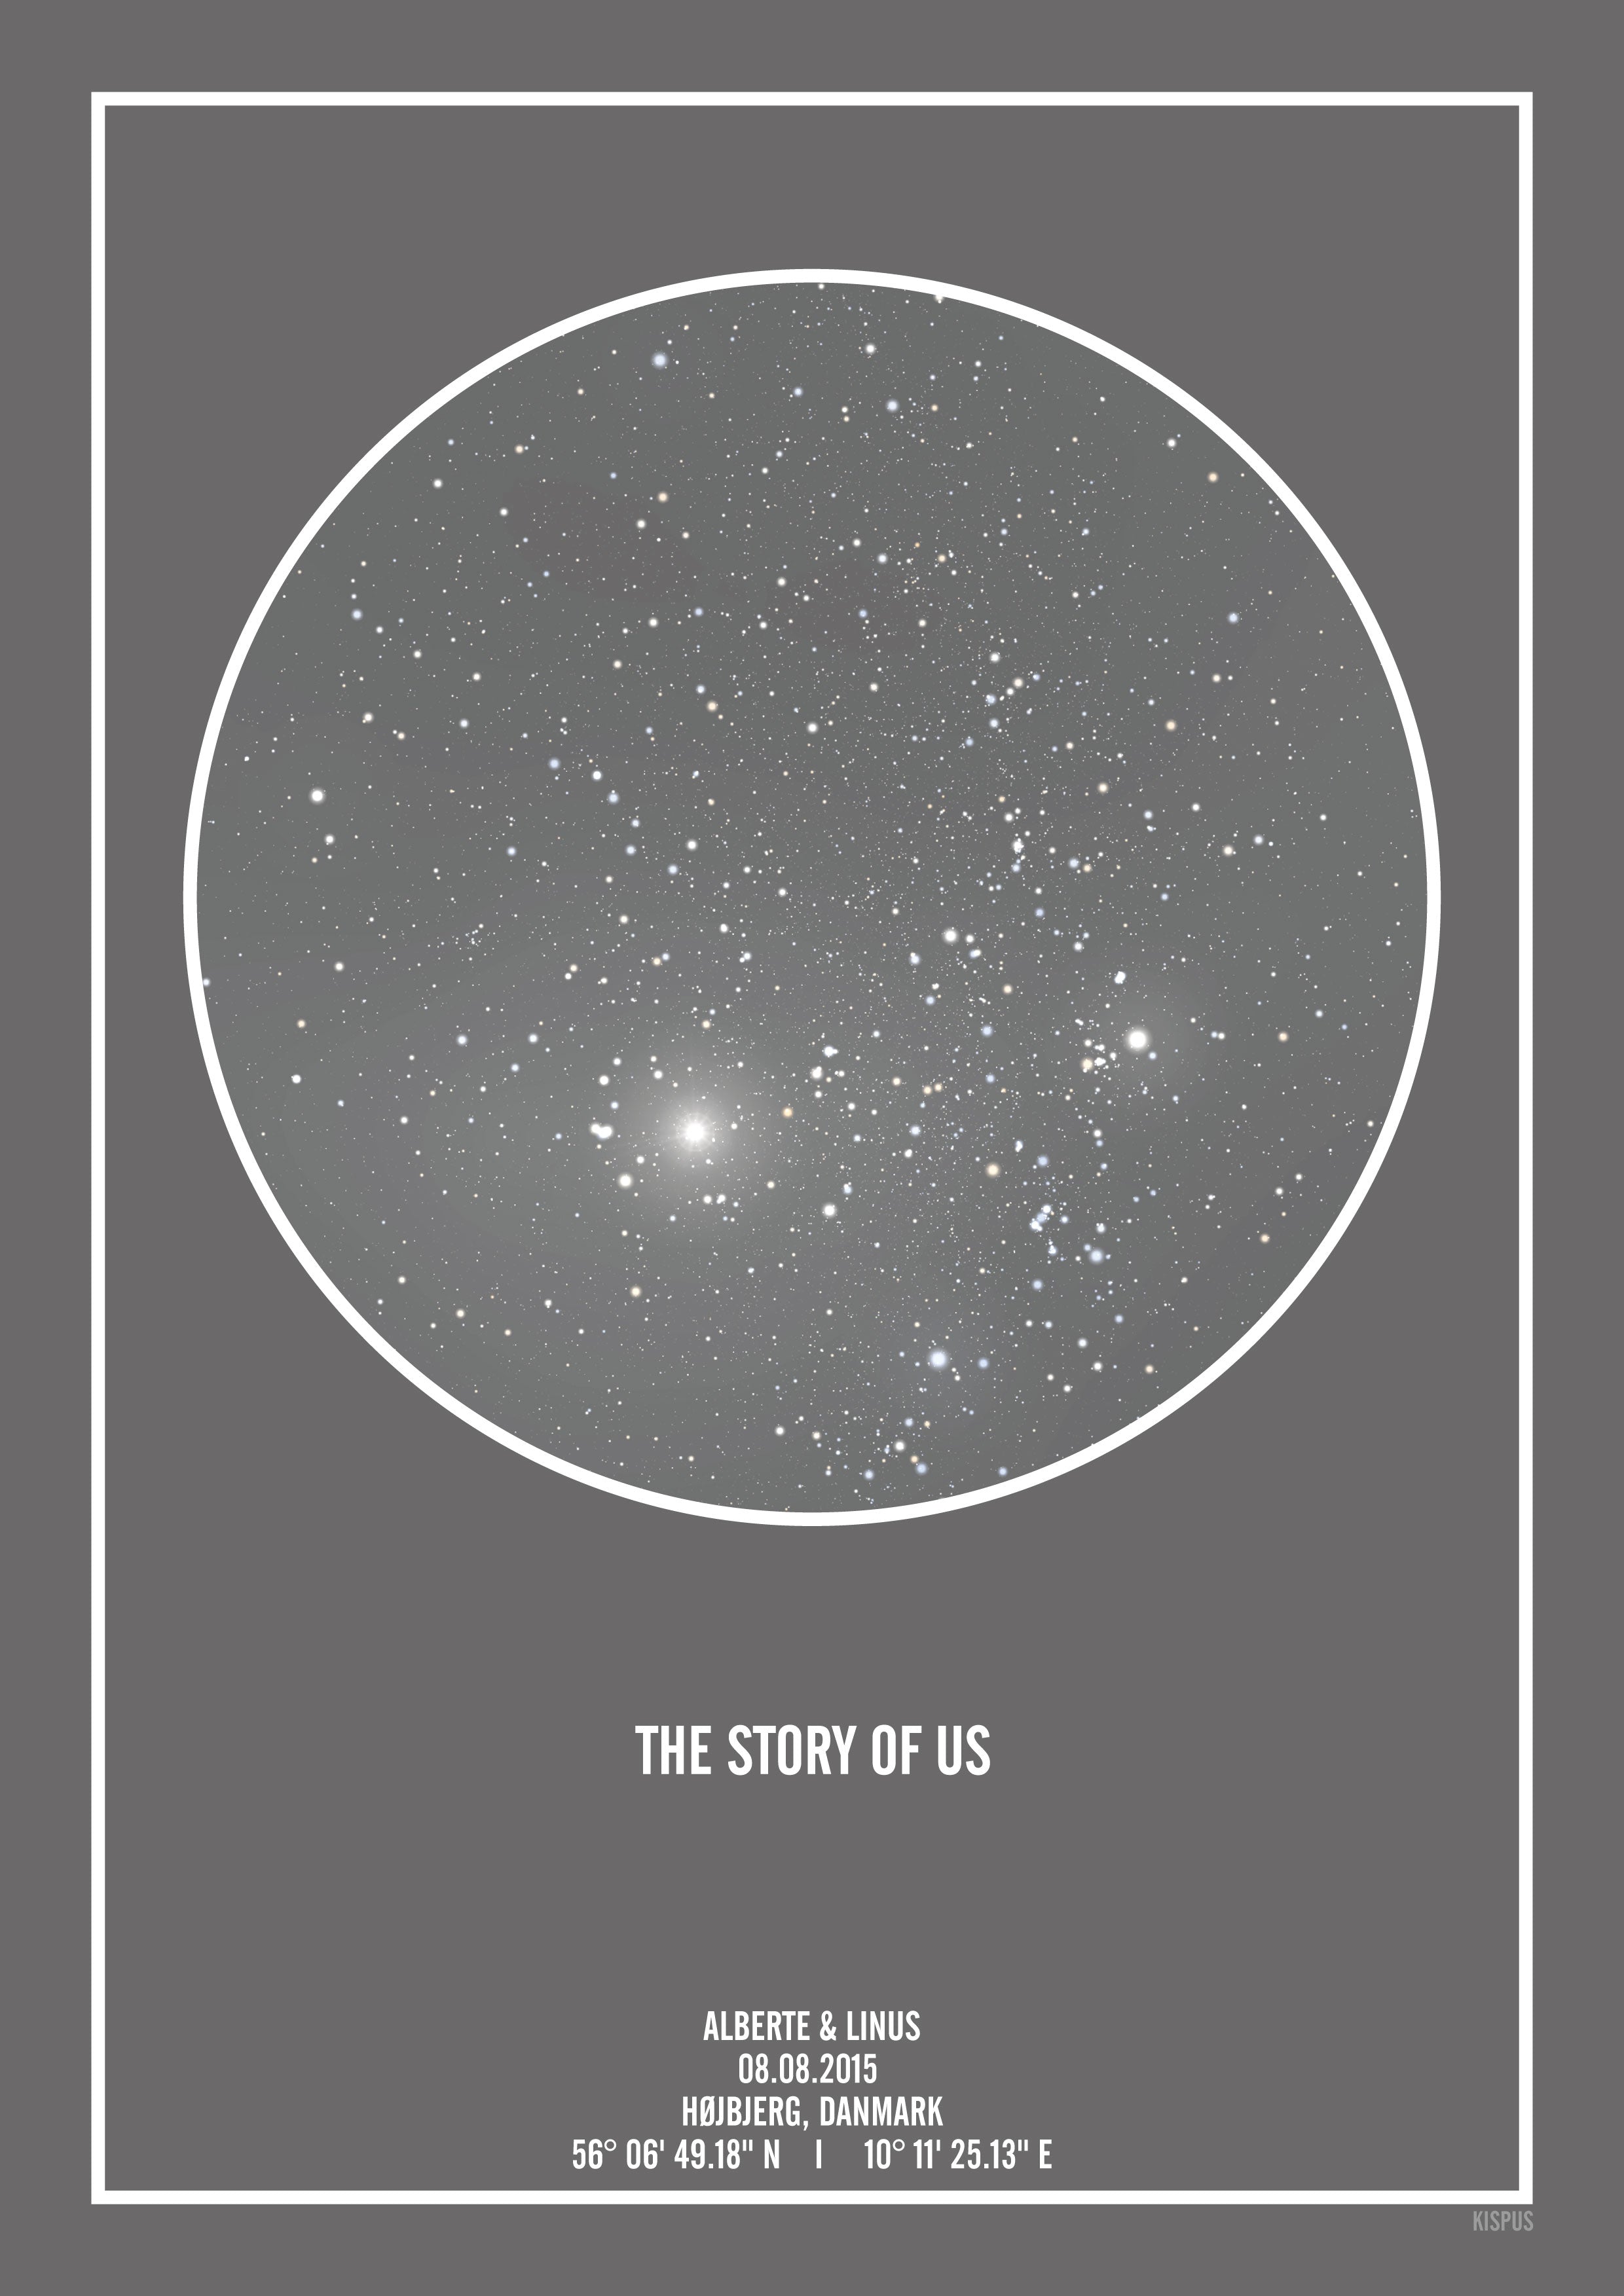 Se PERSONLIG STJERNEHIMMEL PLAKAT (MØRKEGRÅ) - 30x40 / Hvid tekst + grå stjernehimmel / Klar stjernehimmel hos KISPUS